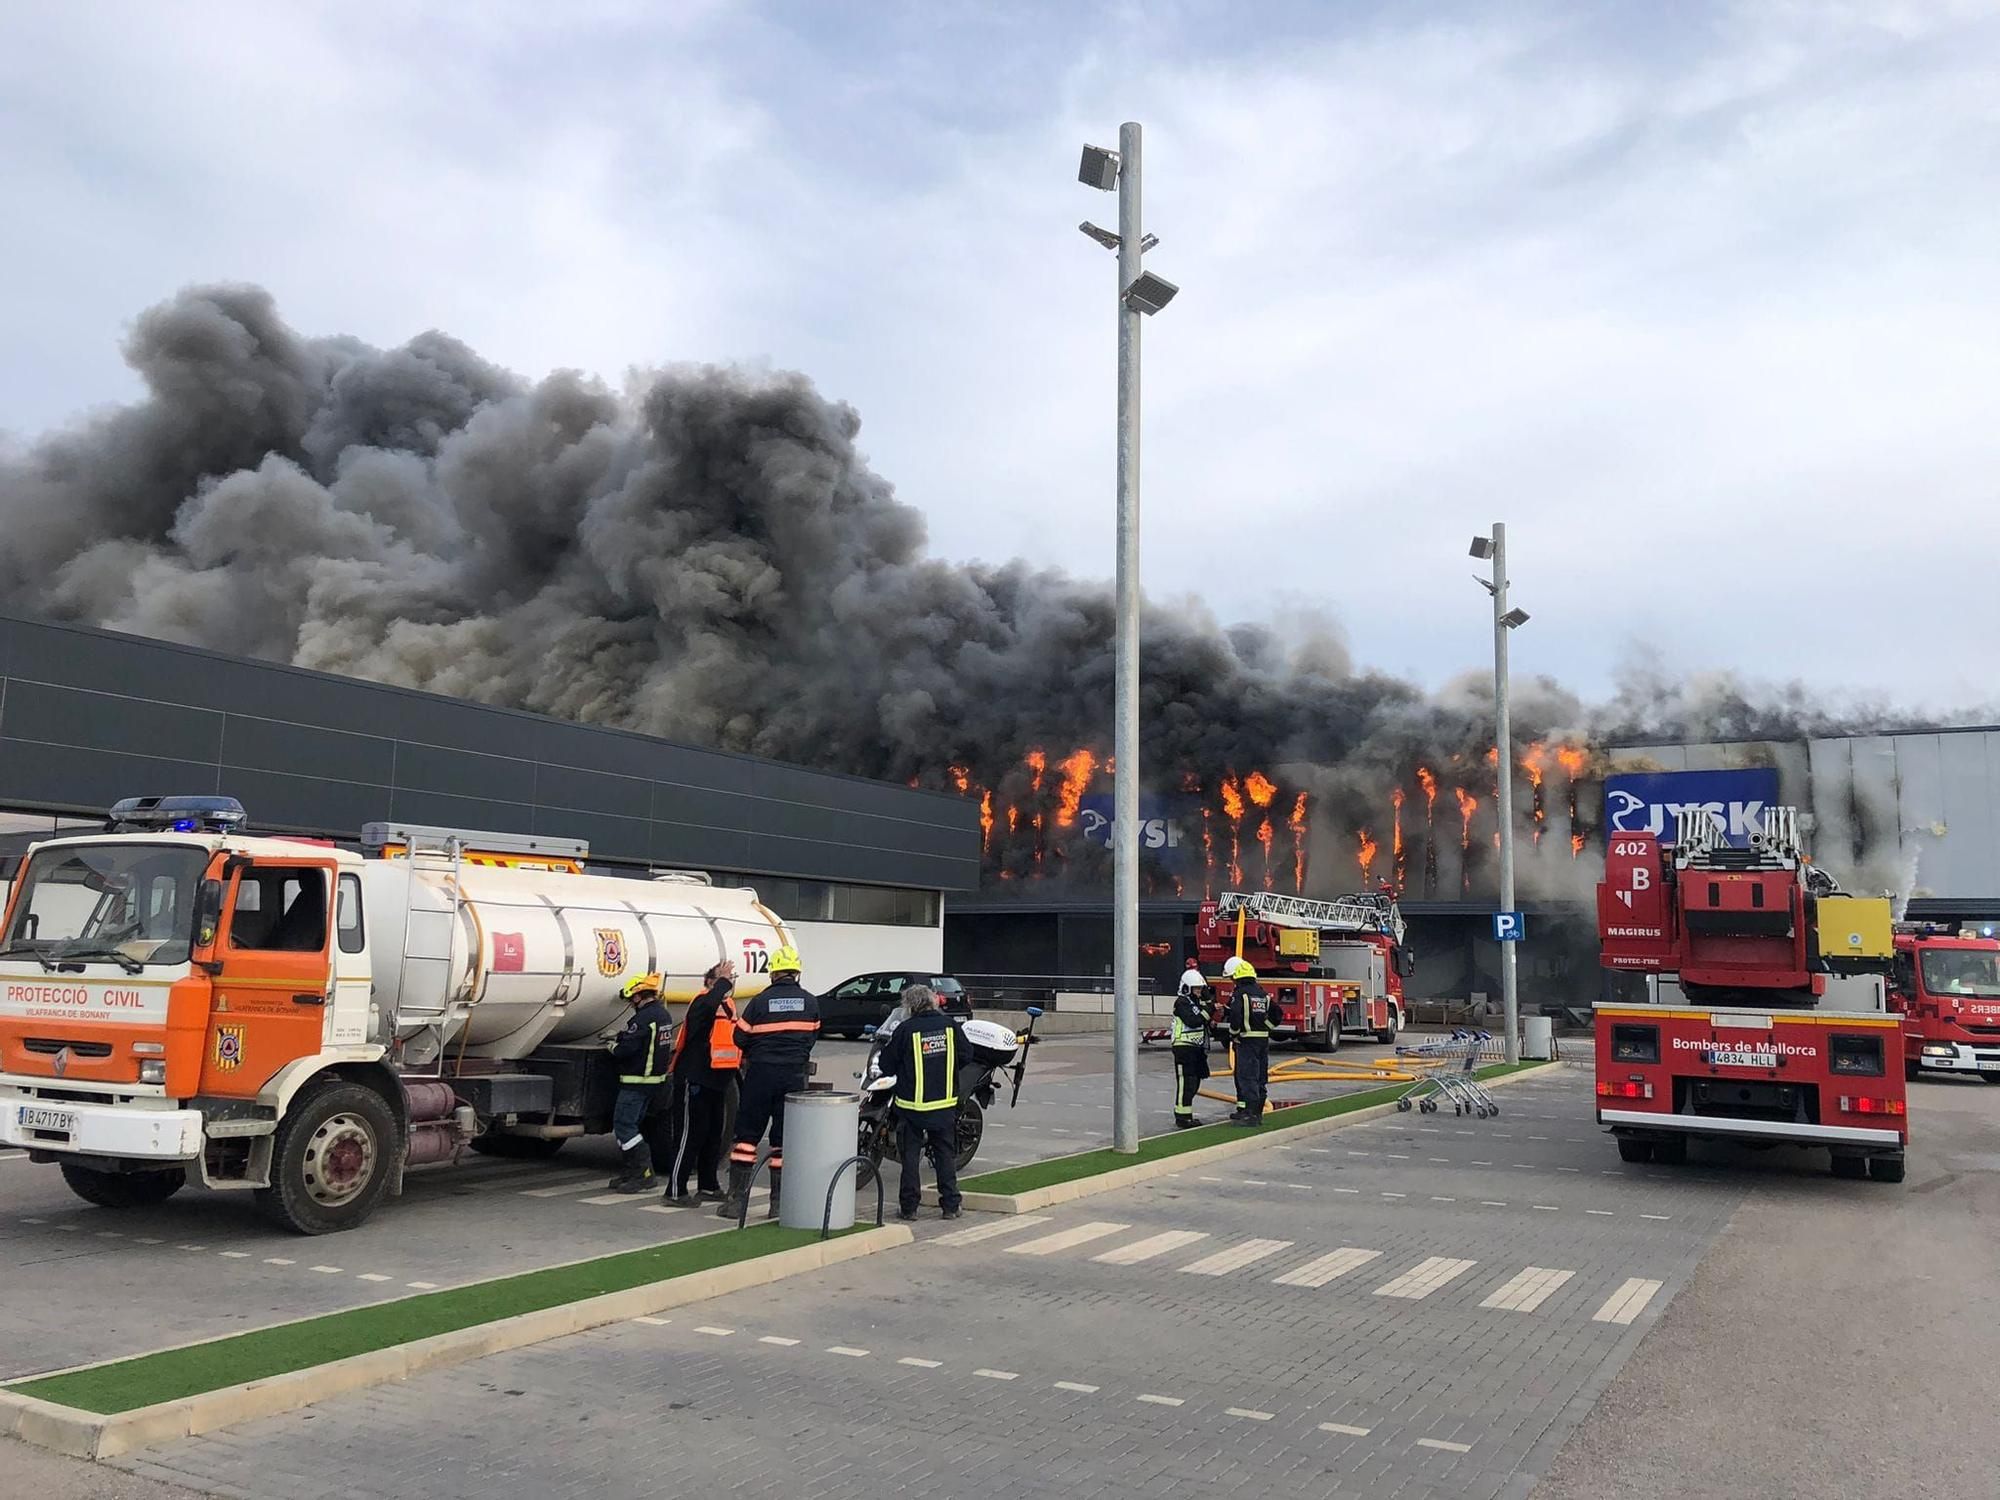 Feuer zerstört Möbelhaus Jysk in Manacor auf Mallorca